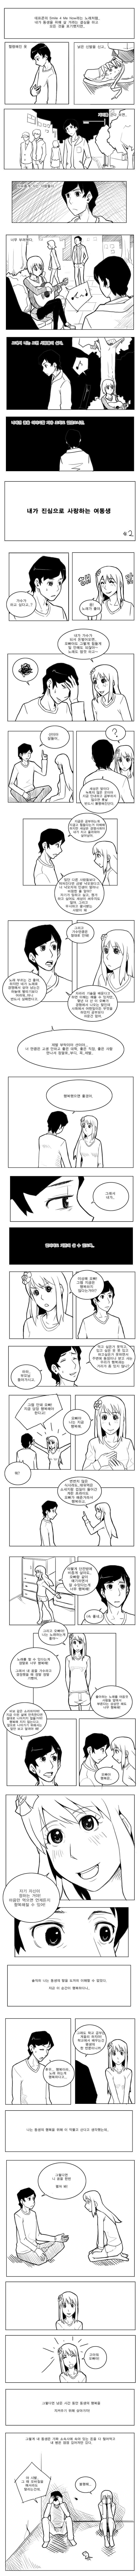 오빠가 여자동생을위해 헌신하는 만화 2화개조아 이미지 #1